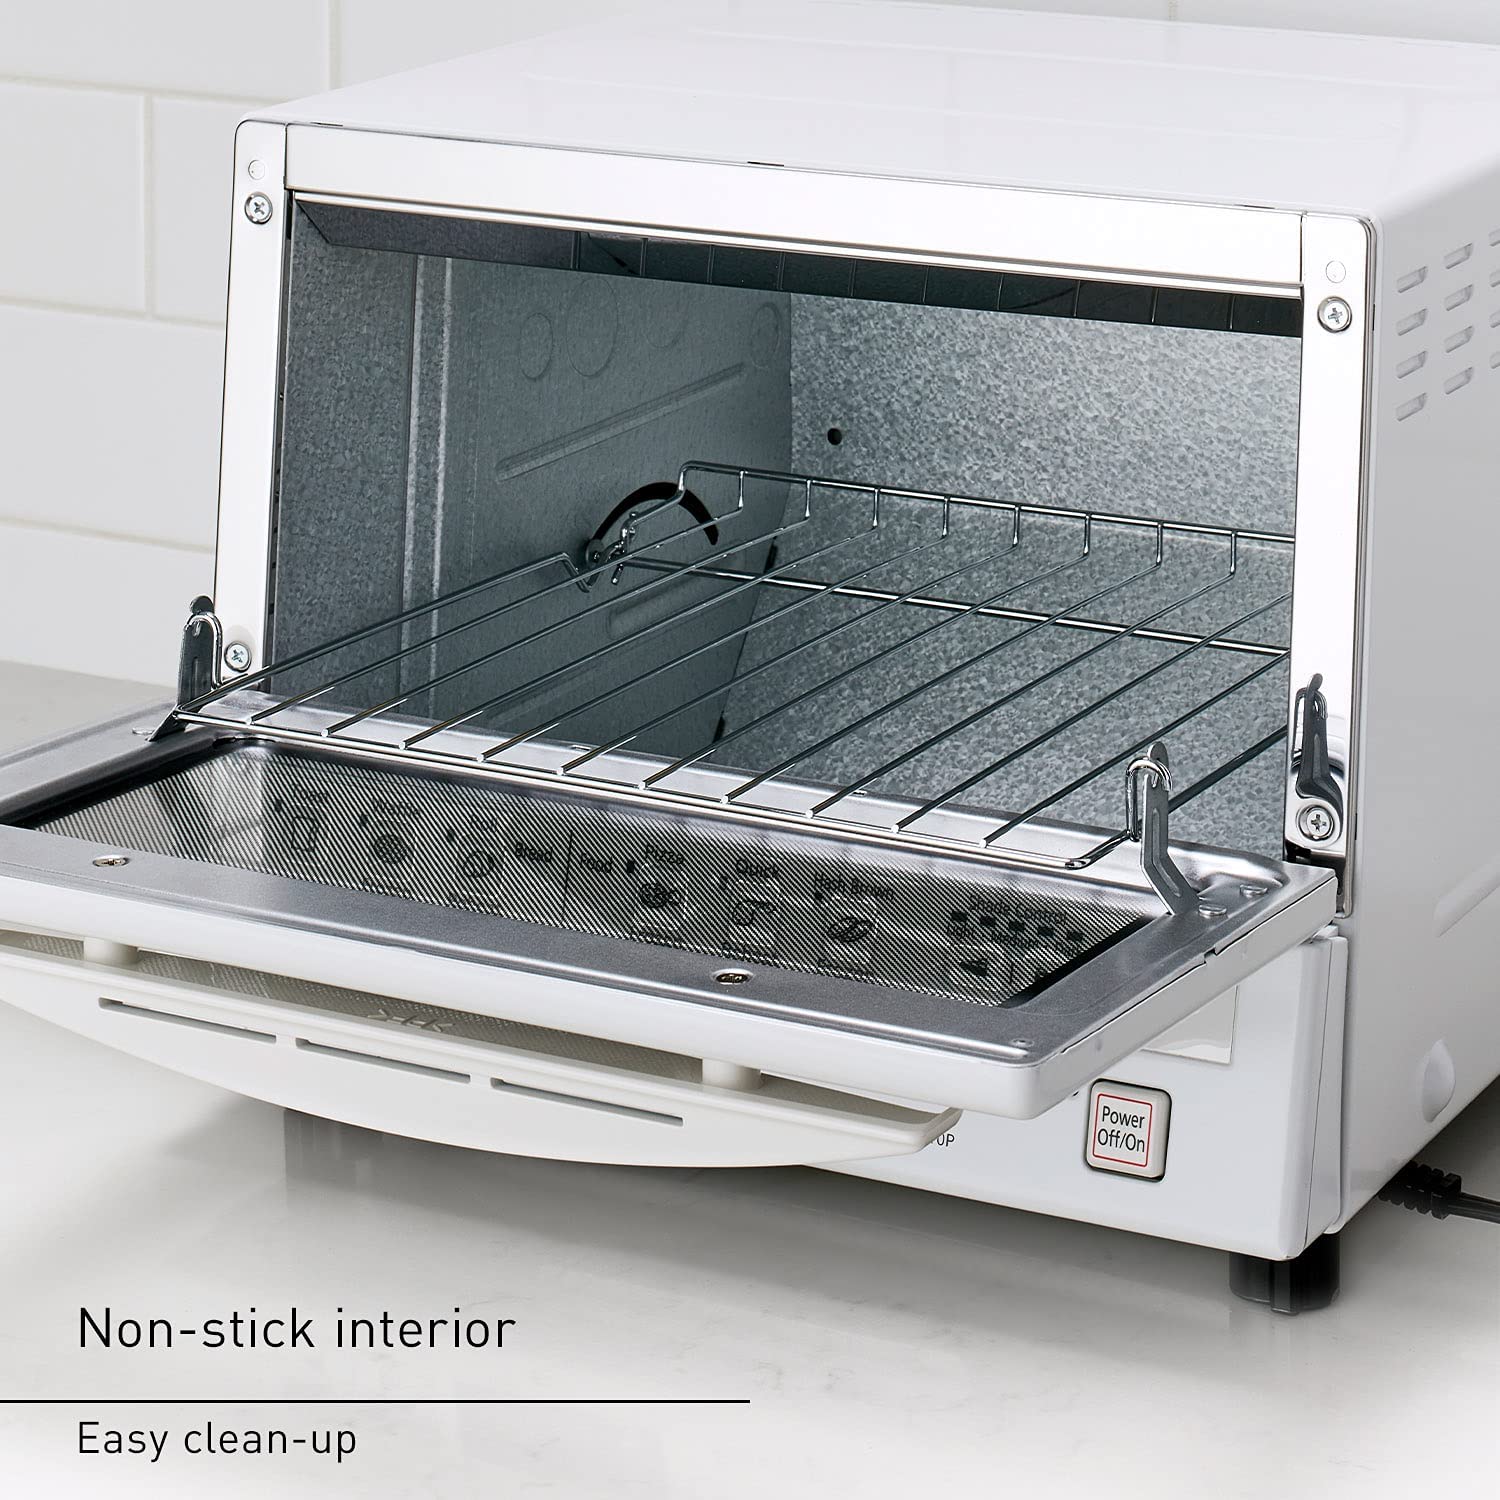 Panasonic NB-G110P-K FlashXpress Toaster Oven - White